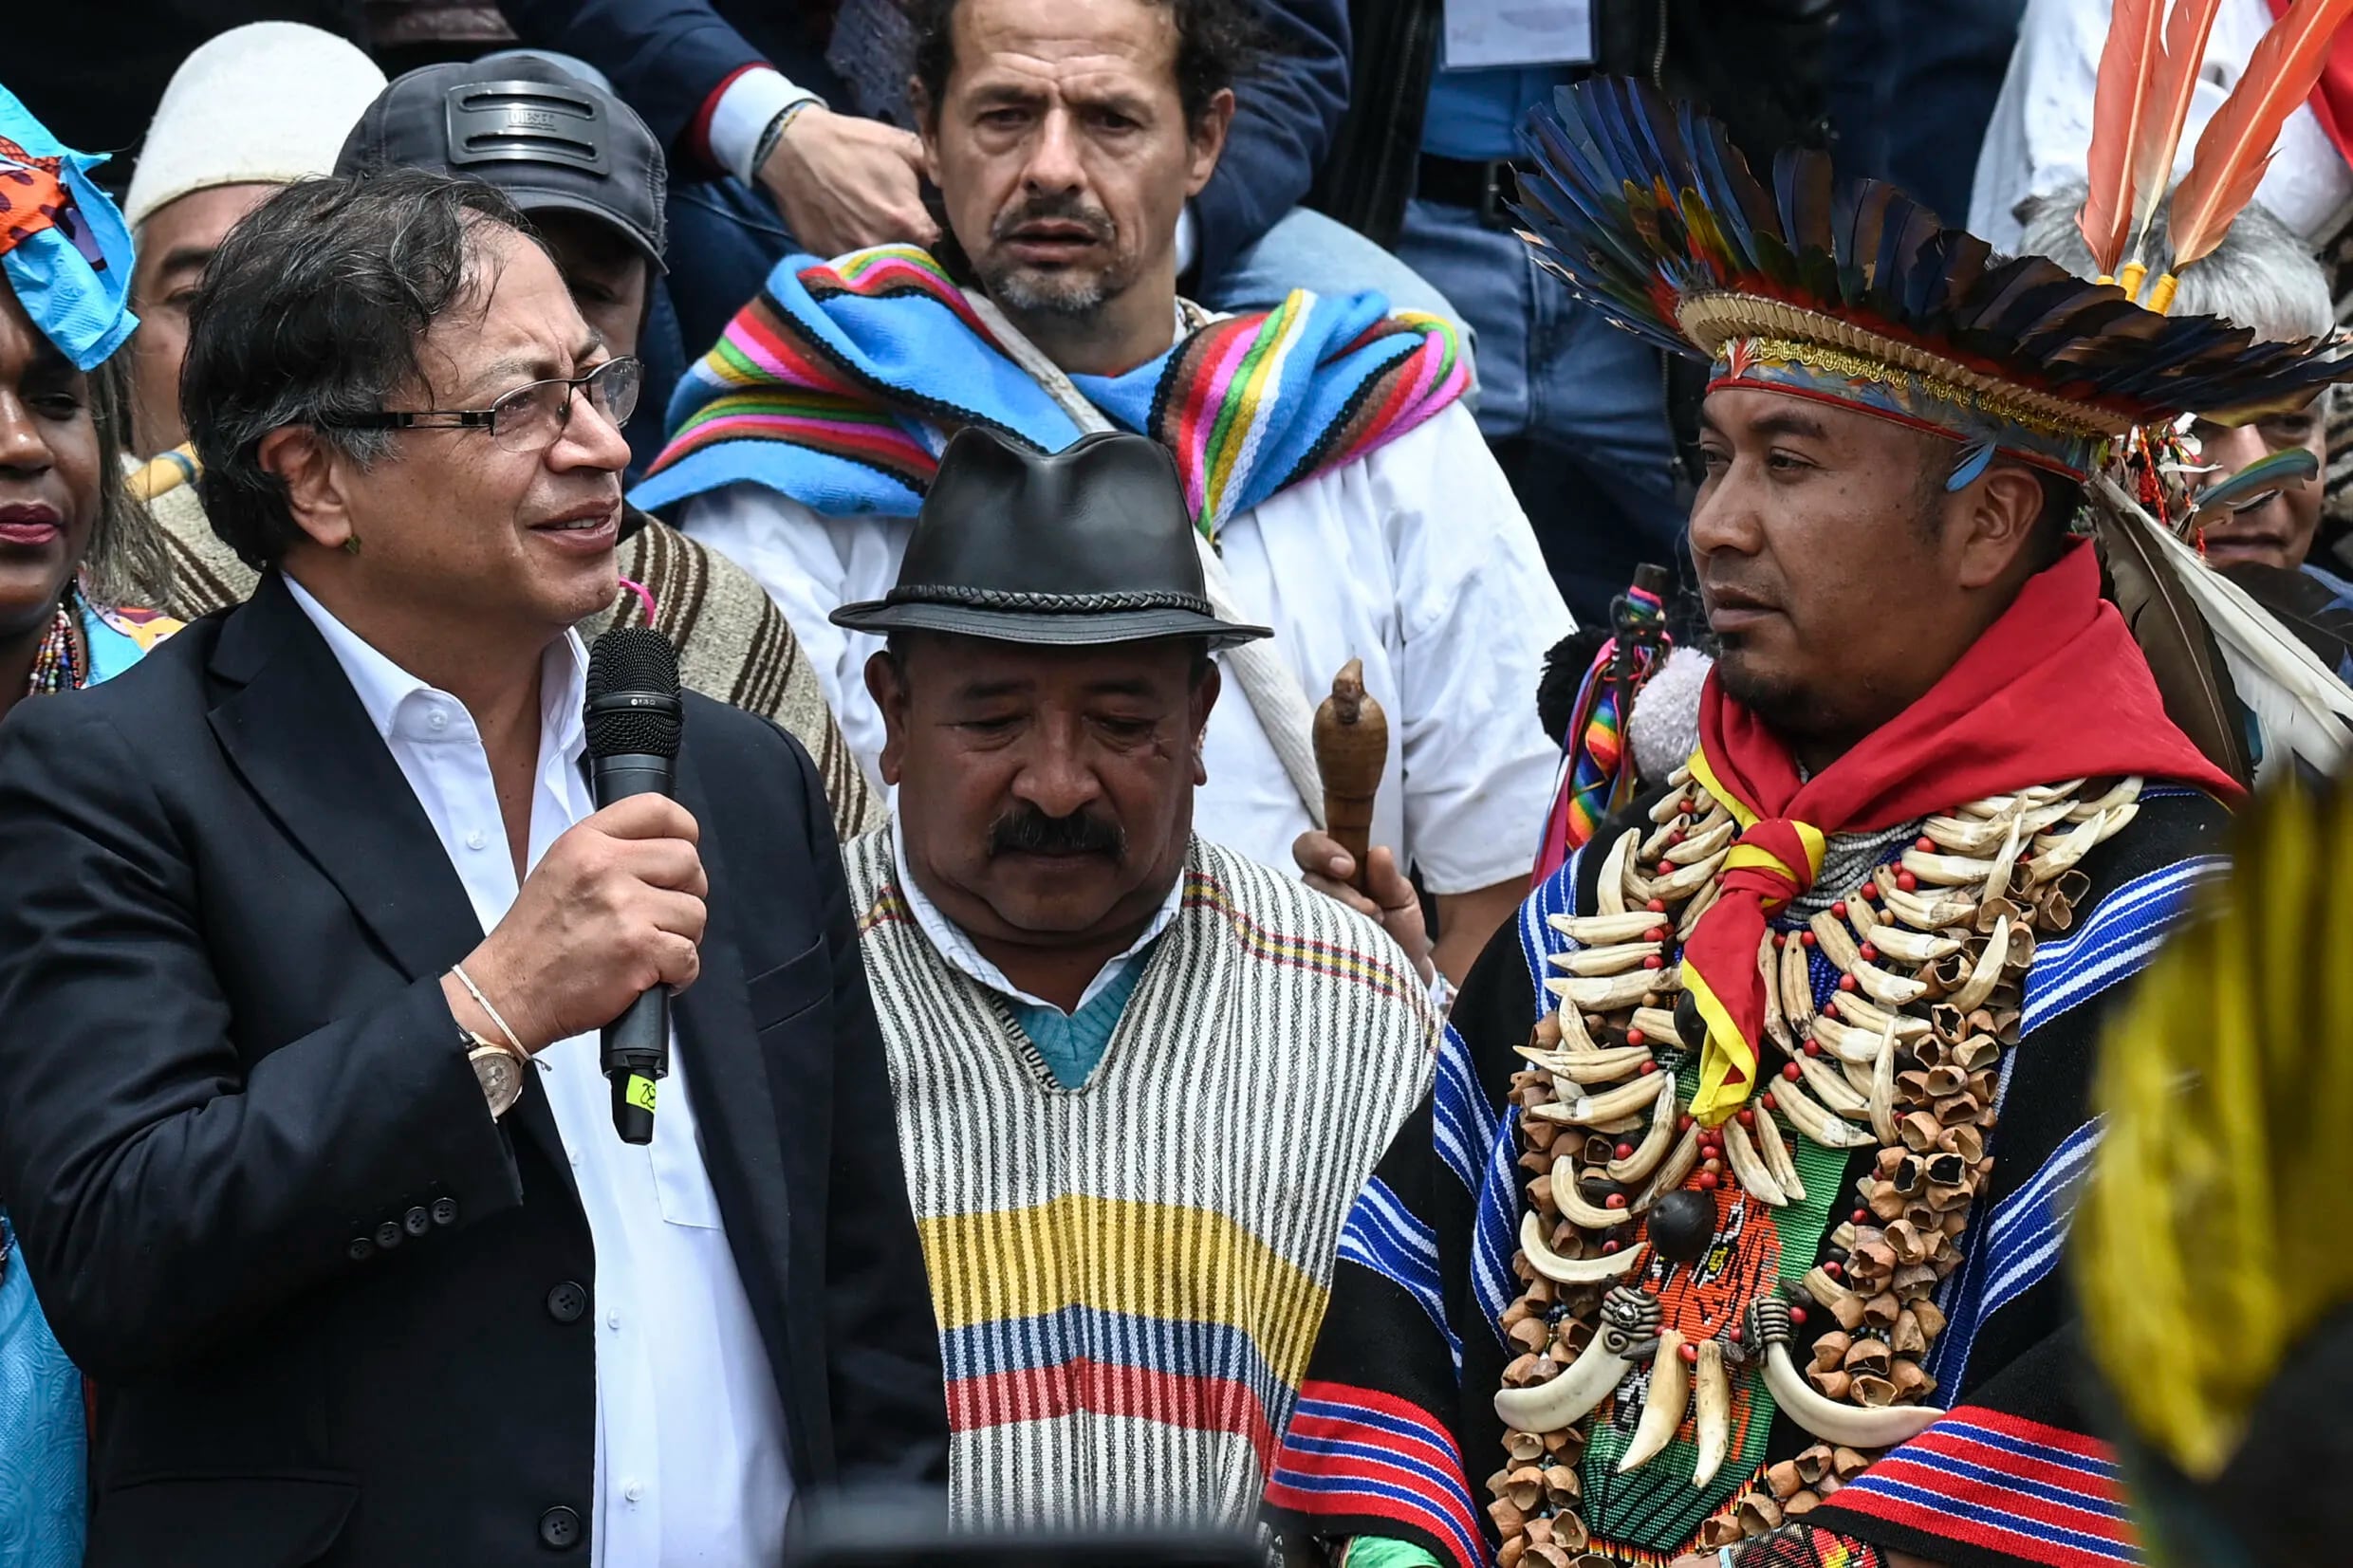 El presidente electo de Colombia habla el 6 de agosto de 2022 al ser investido simbólicamente en Bogotá por los pueblos originarios